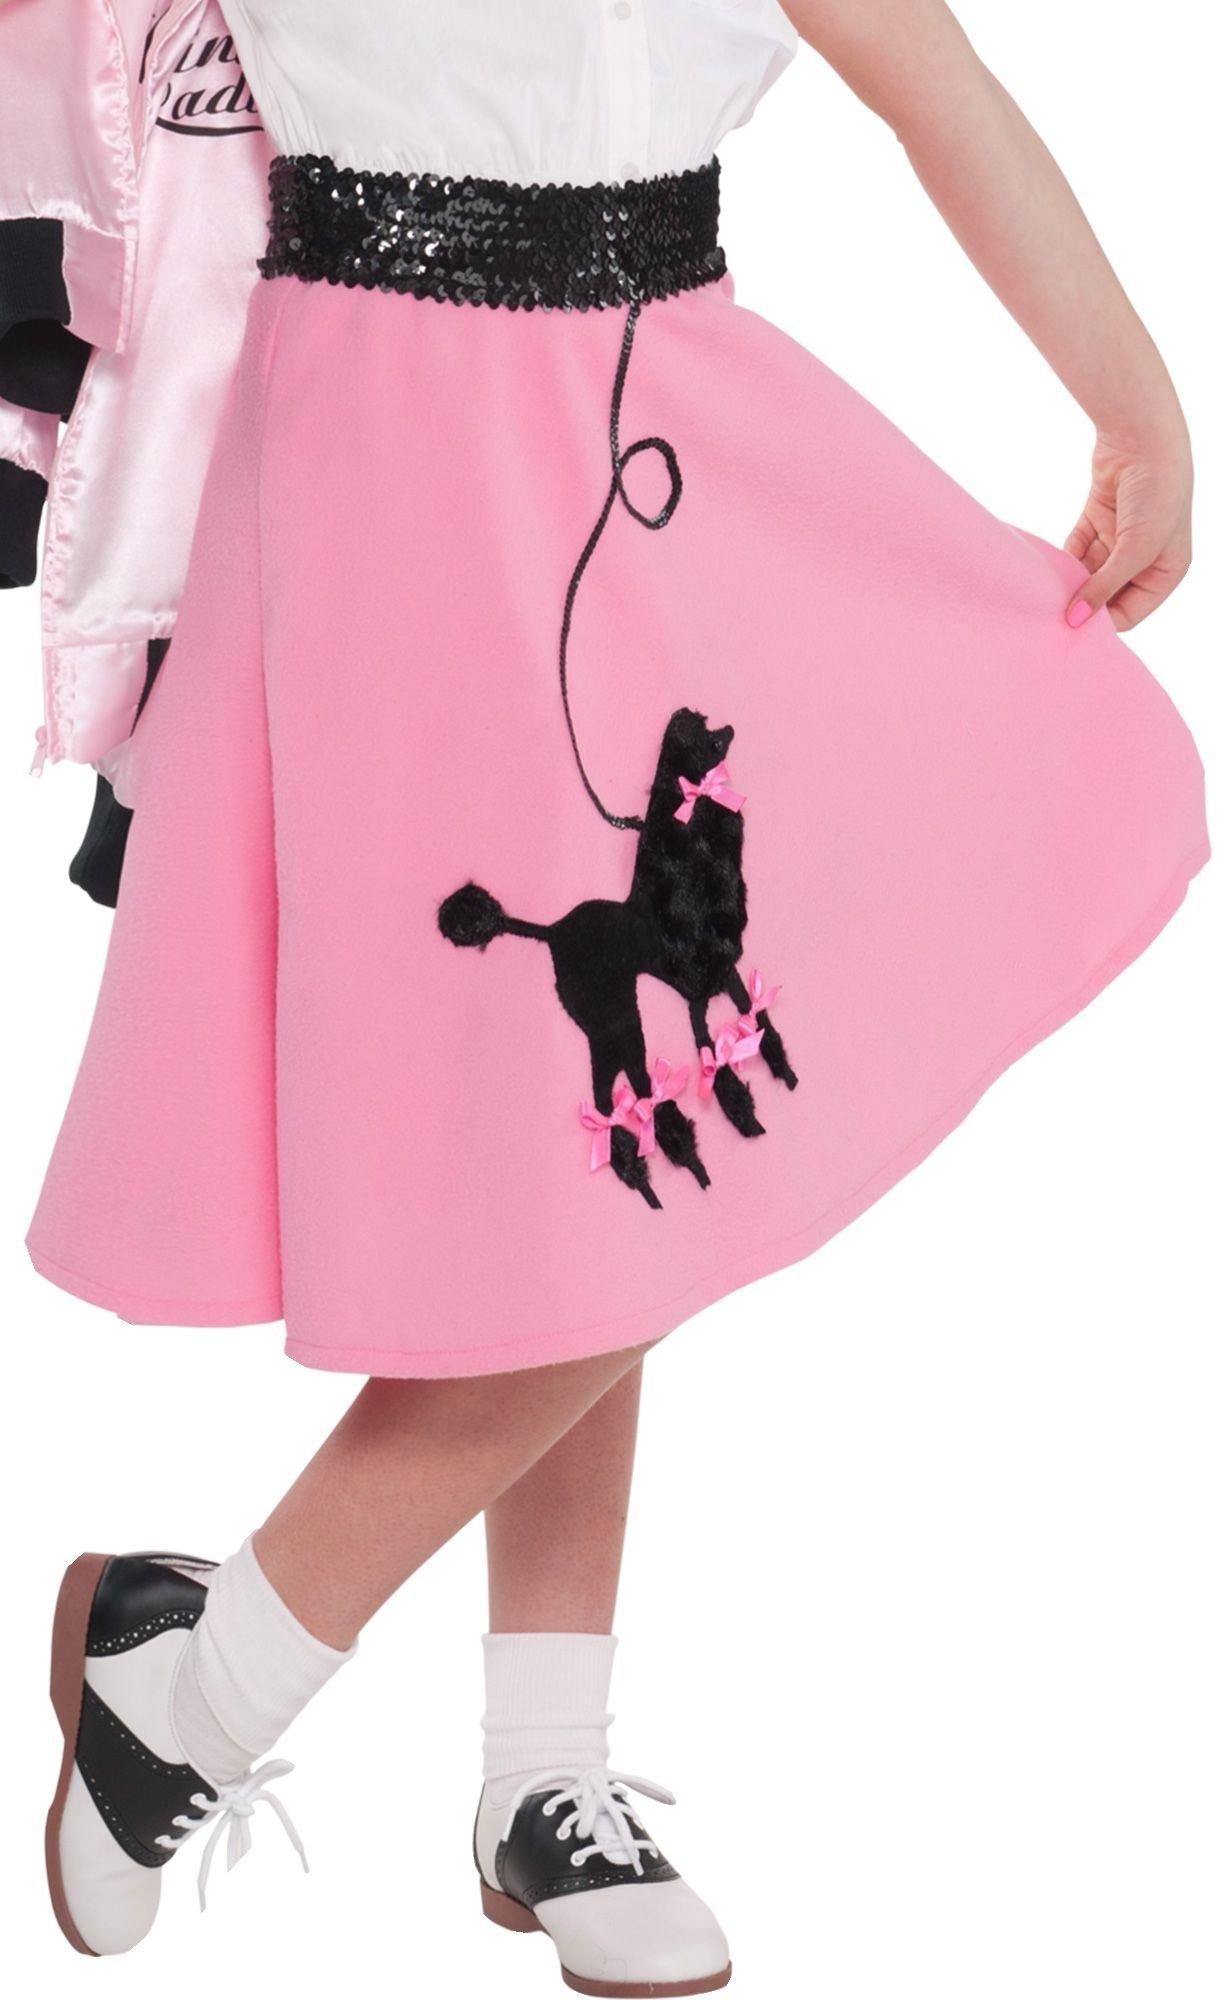 tage Melting Rastløs Pink Poodle Skirt for Girls | Party City